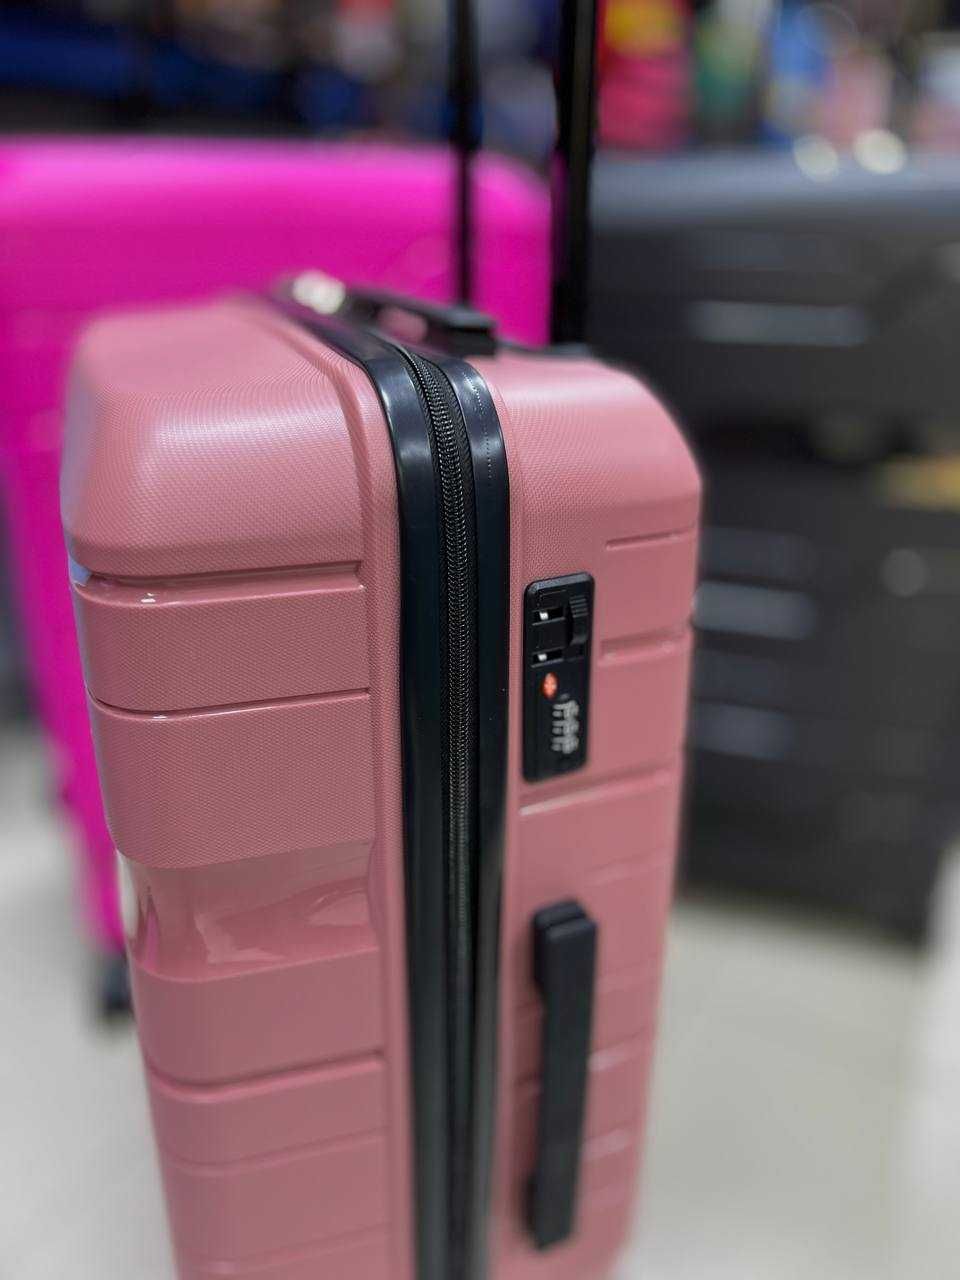 Удароустойчив куфар за ръчен багаж от полипропилен! Колела 360°